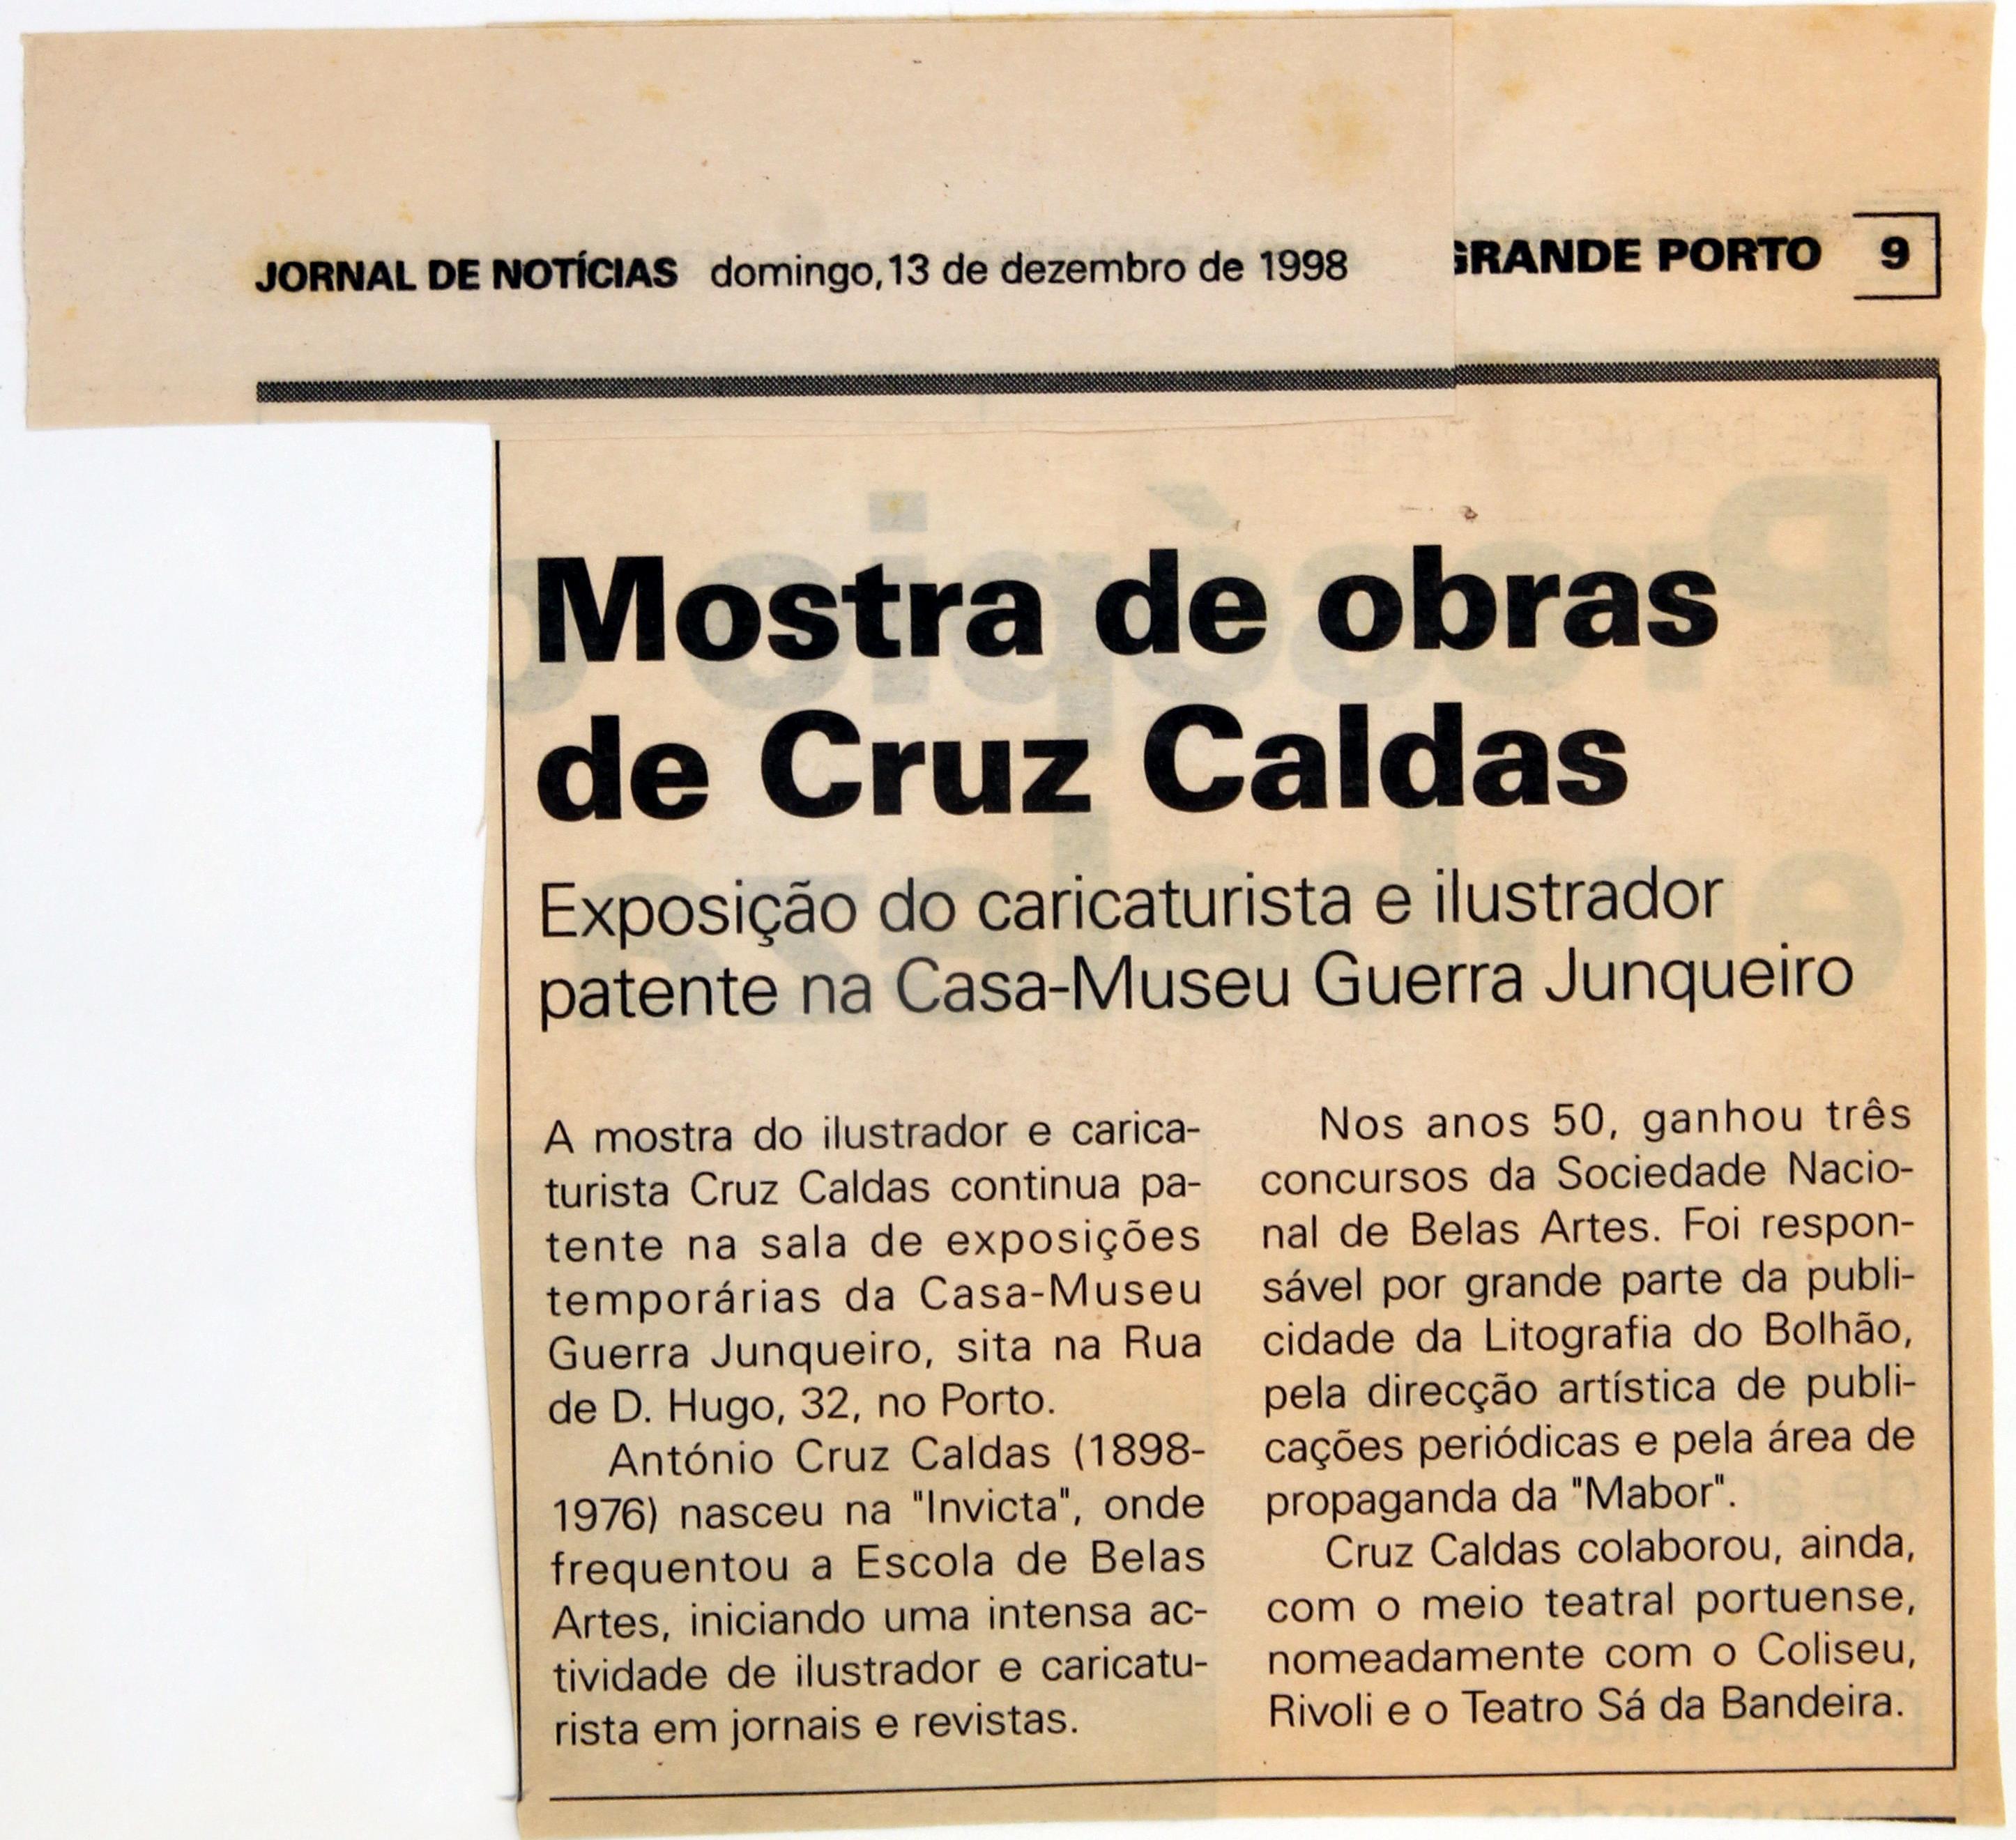 3ª Exposição "Documental" póstuma : «Cruz Caldas : Caricaturista e Ilustrador» : «Jornal de Notícias» : mostra de obras de Cruz Caldas ()